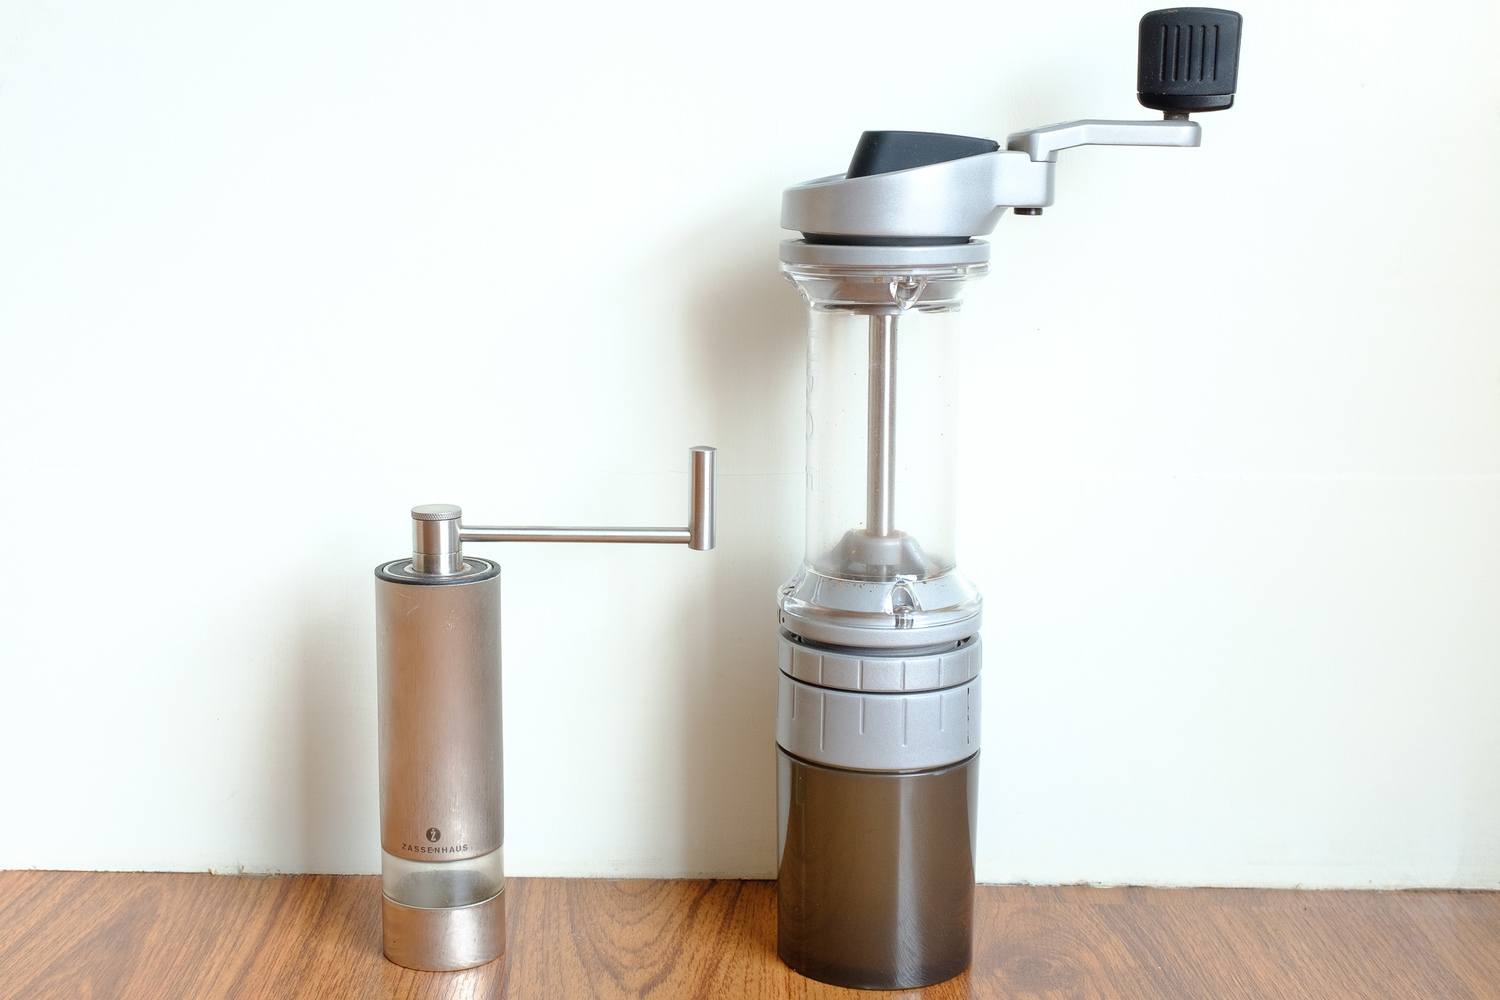 Manual Coffee Grinder Fine to Coarse - Portable Espresso Grinder